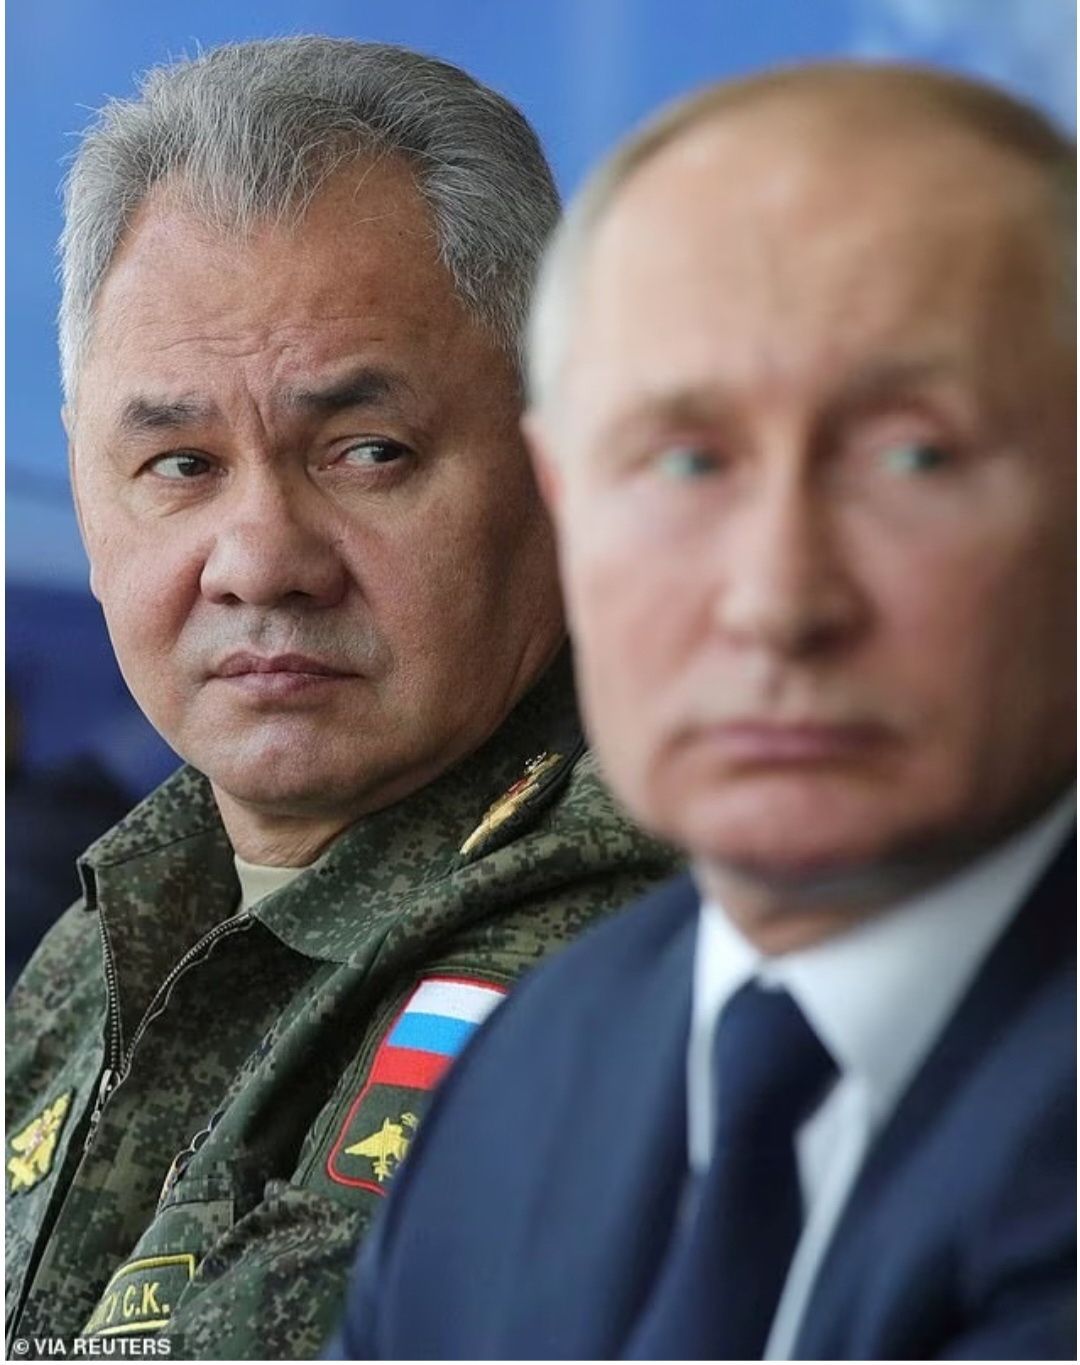 Kementerian Shoigu menuduh Prigozhin berbohong dan membantu musuh, foto: Menteri Pertahanan Sergei Shoigu digambarkan bersama Putin pada tahun 2020./ 